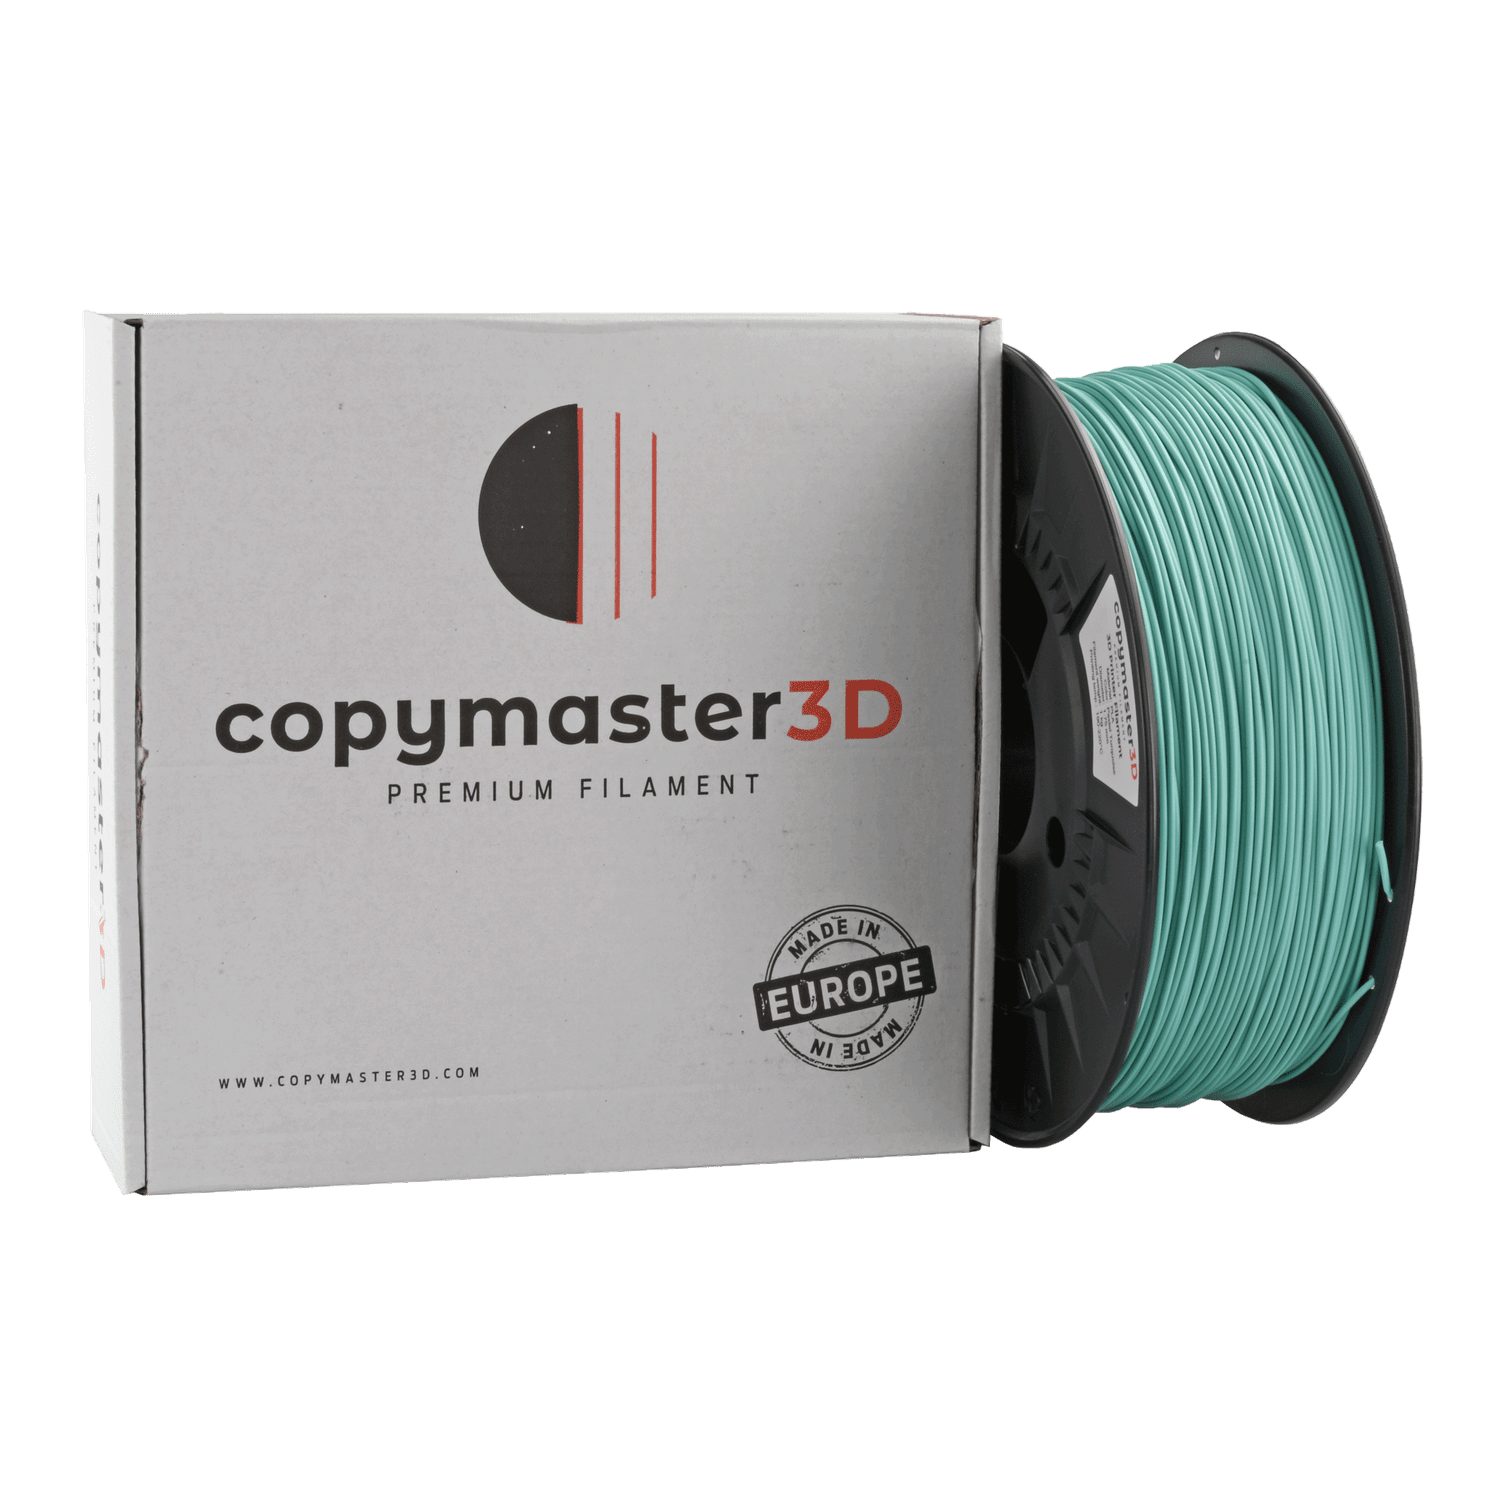 Copymaster3D Premium PLA Filament 1.75mm 1KG Pastel Turquoise